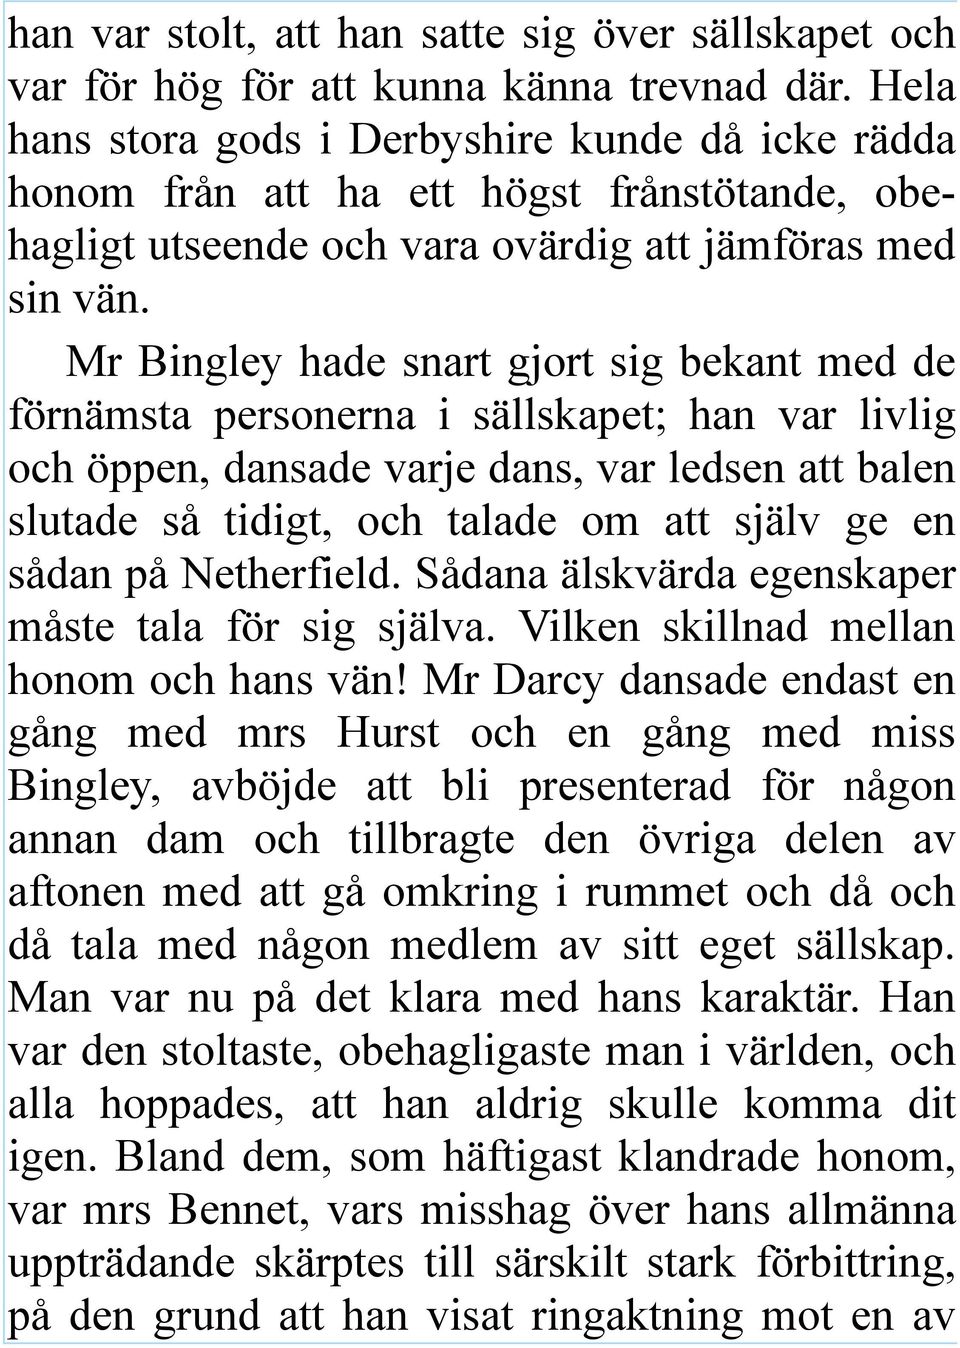 Mr Bingley hade snart gjort sig bekant med de förnämsta personerna i sällskapet; han var livlig och öppen, dansade varje dans, var ledsen att balen slutade så tidigt, och talade om att själv ge en